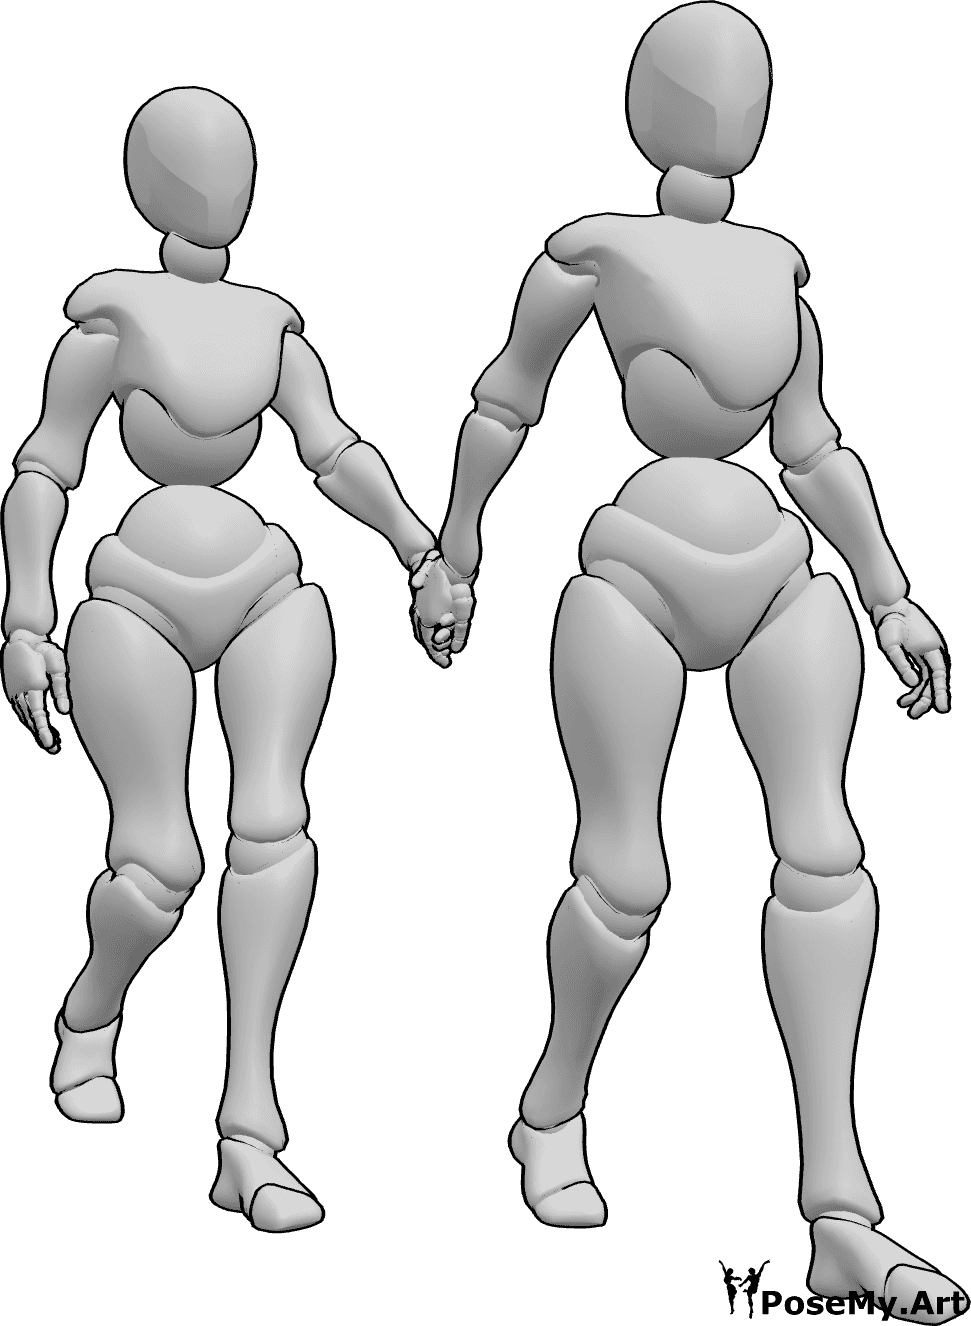 Posen-Referenz- Zwei Frauen in Geh-Pose - Zwei Frauen gehen Hand in Hand, die eine hält die Hand der anderen und geht voran